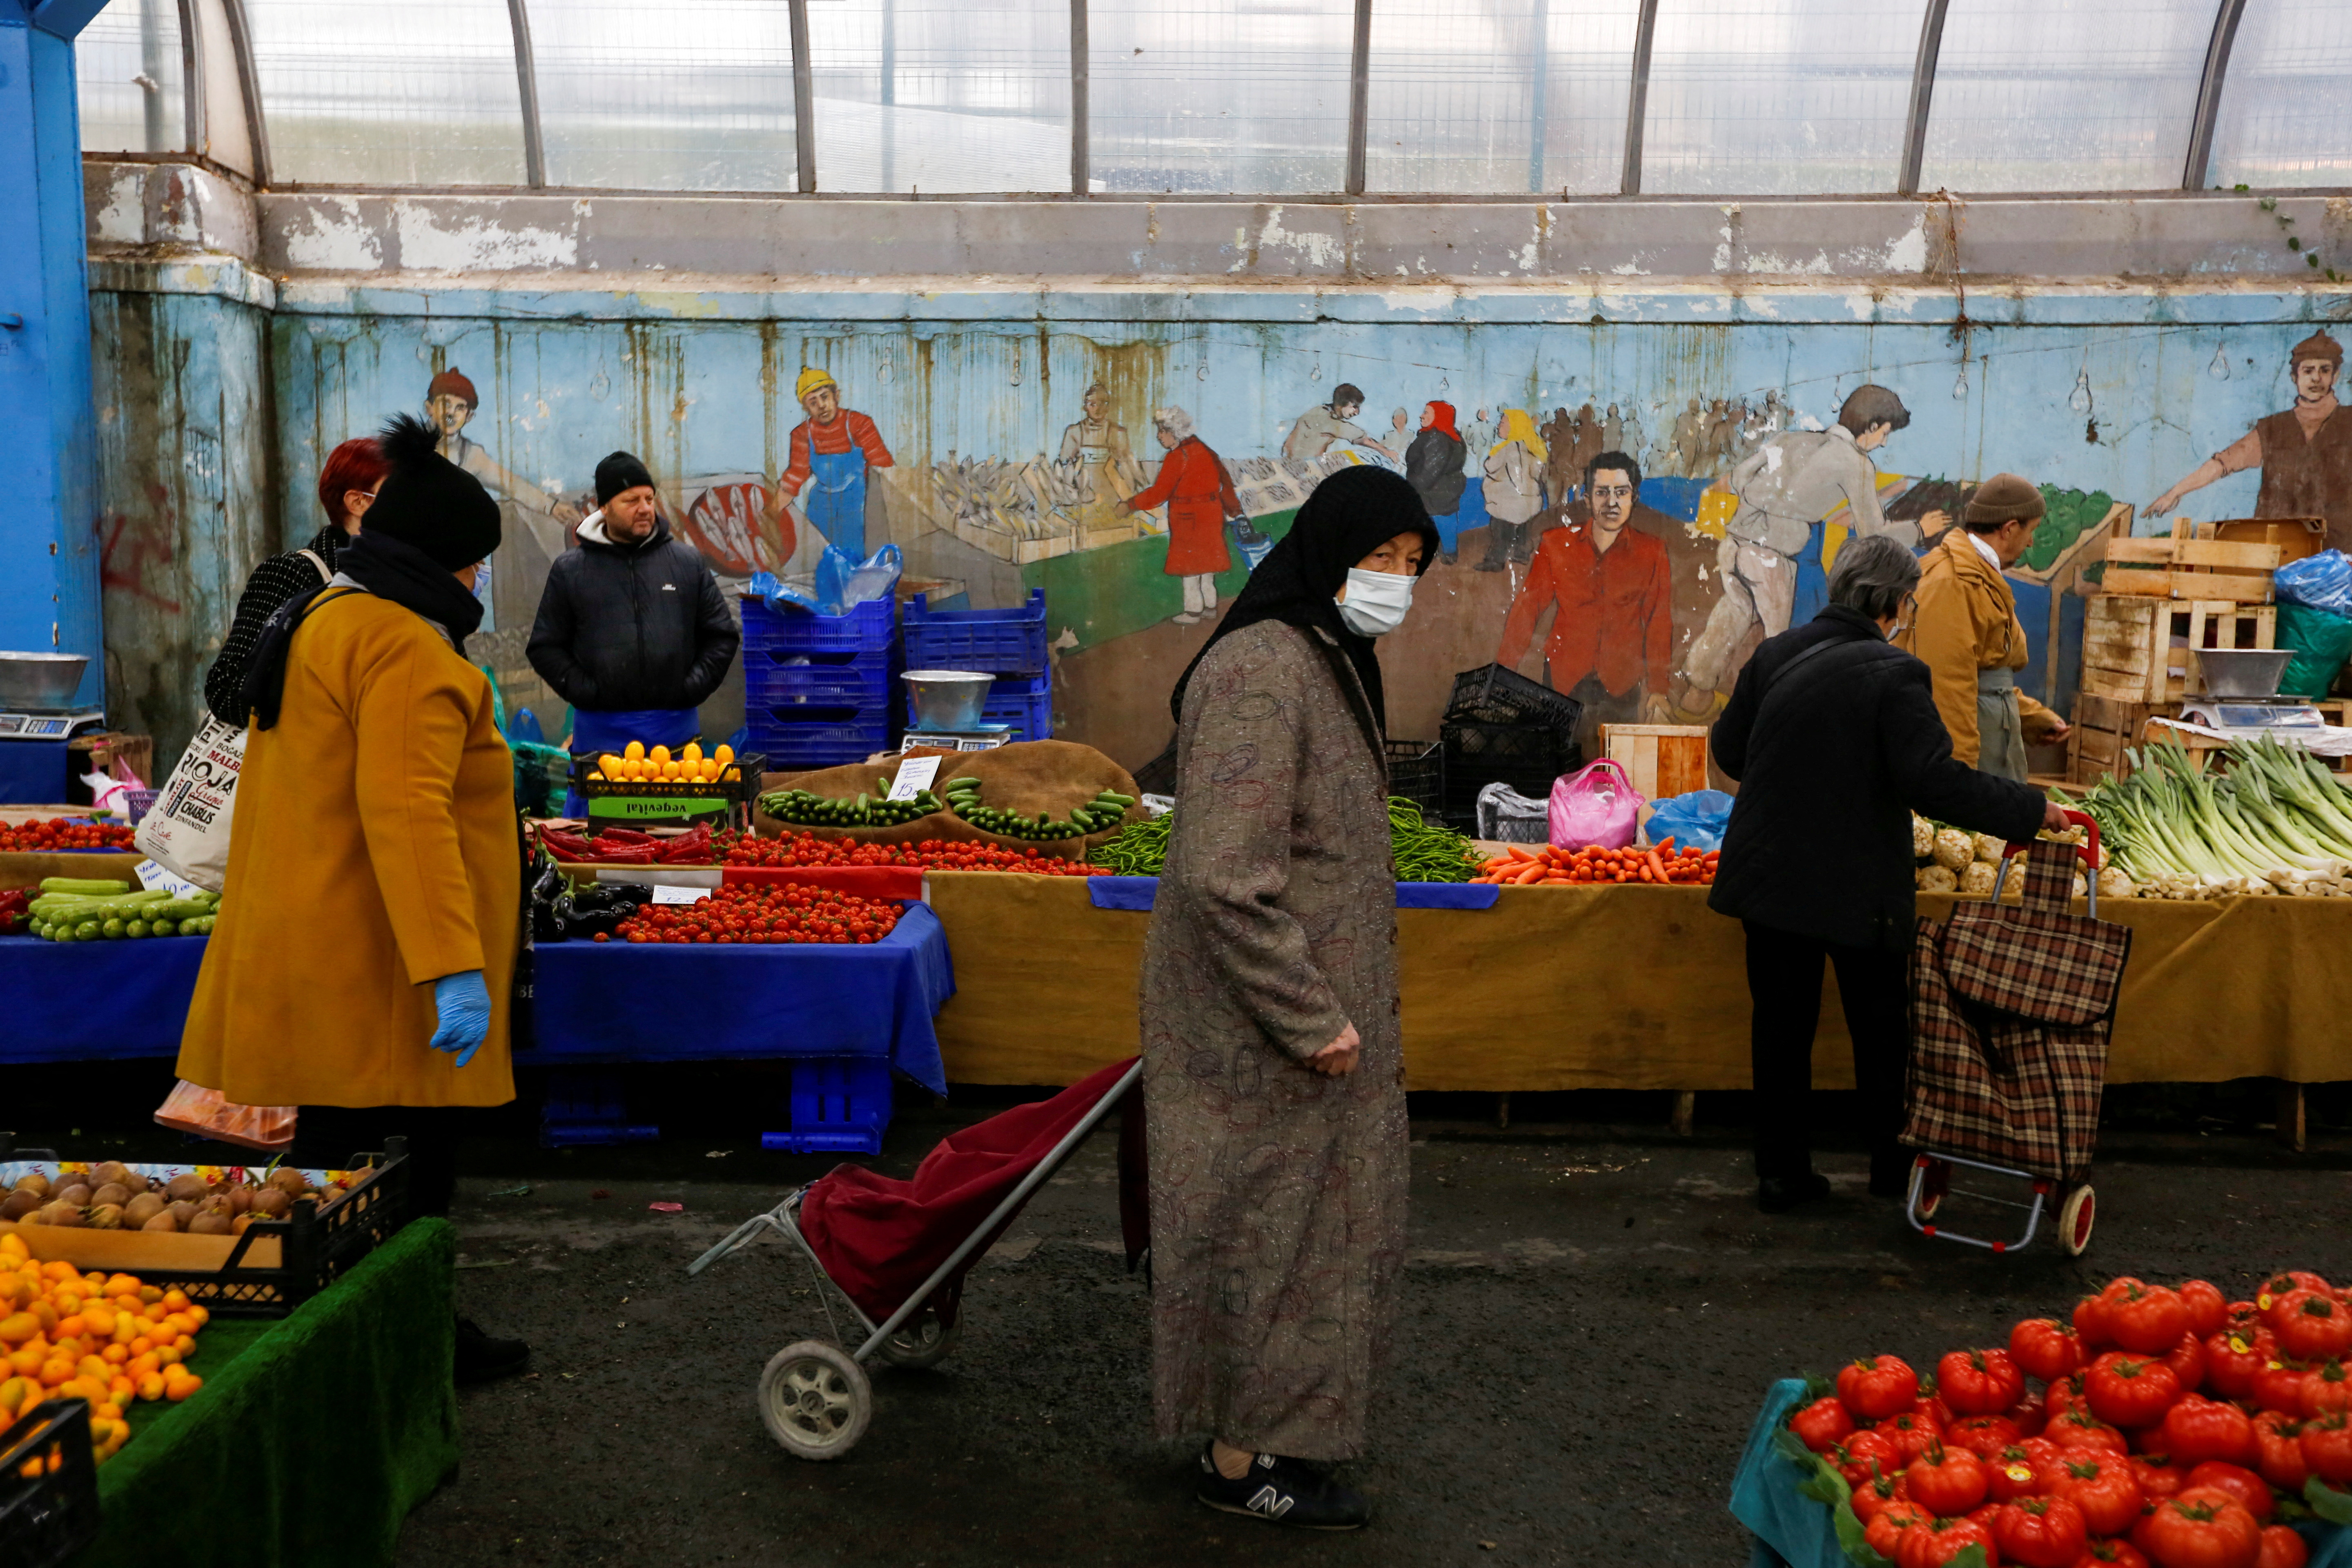 La gente compra en un mercado de productos frescos en Estambul, Turquía. (REUTERS/Dilara Senkaya/archivo)